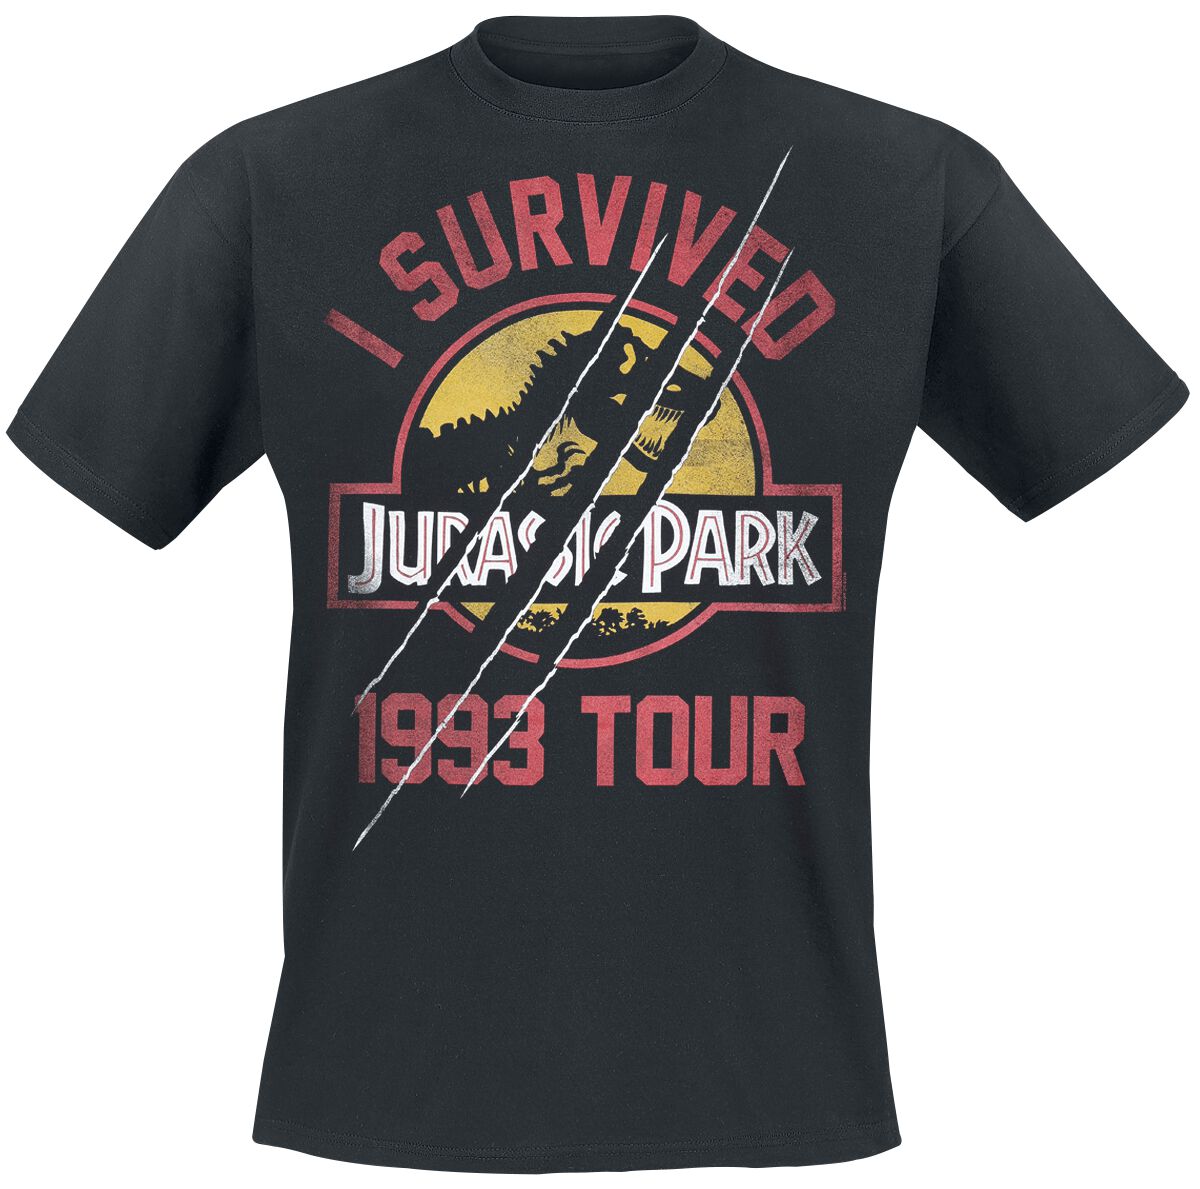 Jurassic Park T-Shirt - I Survived 1993 Tour - S bis XXL - für Männer - Größe M - schwarz  - EMP exklusives Merchandise!